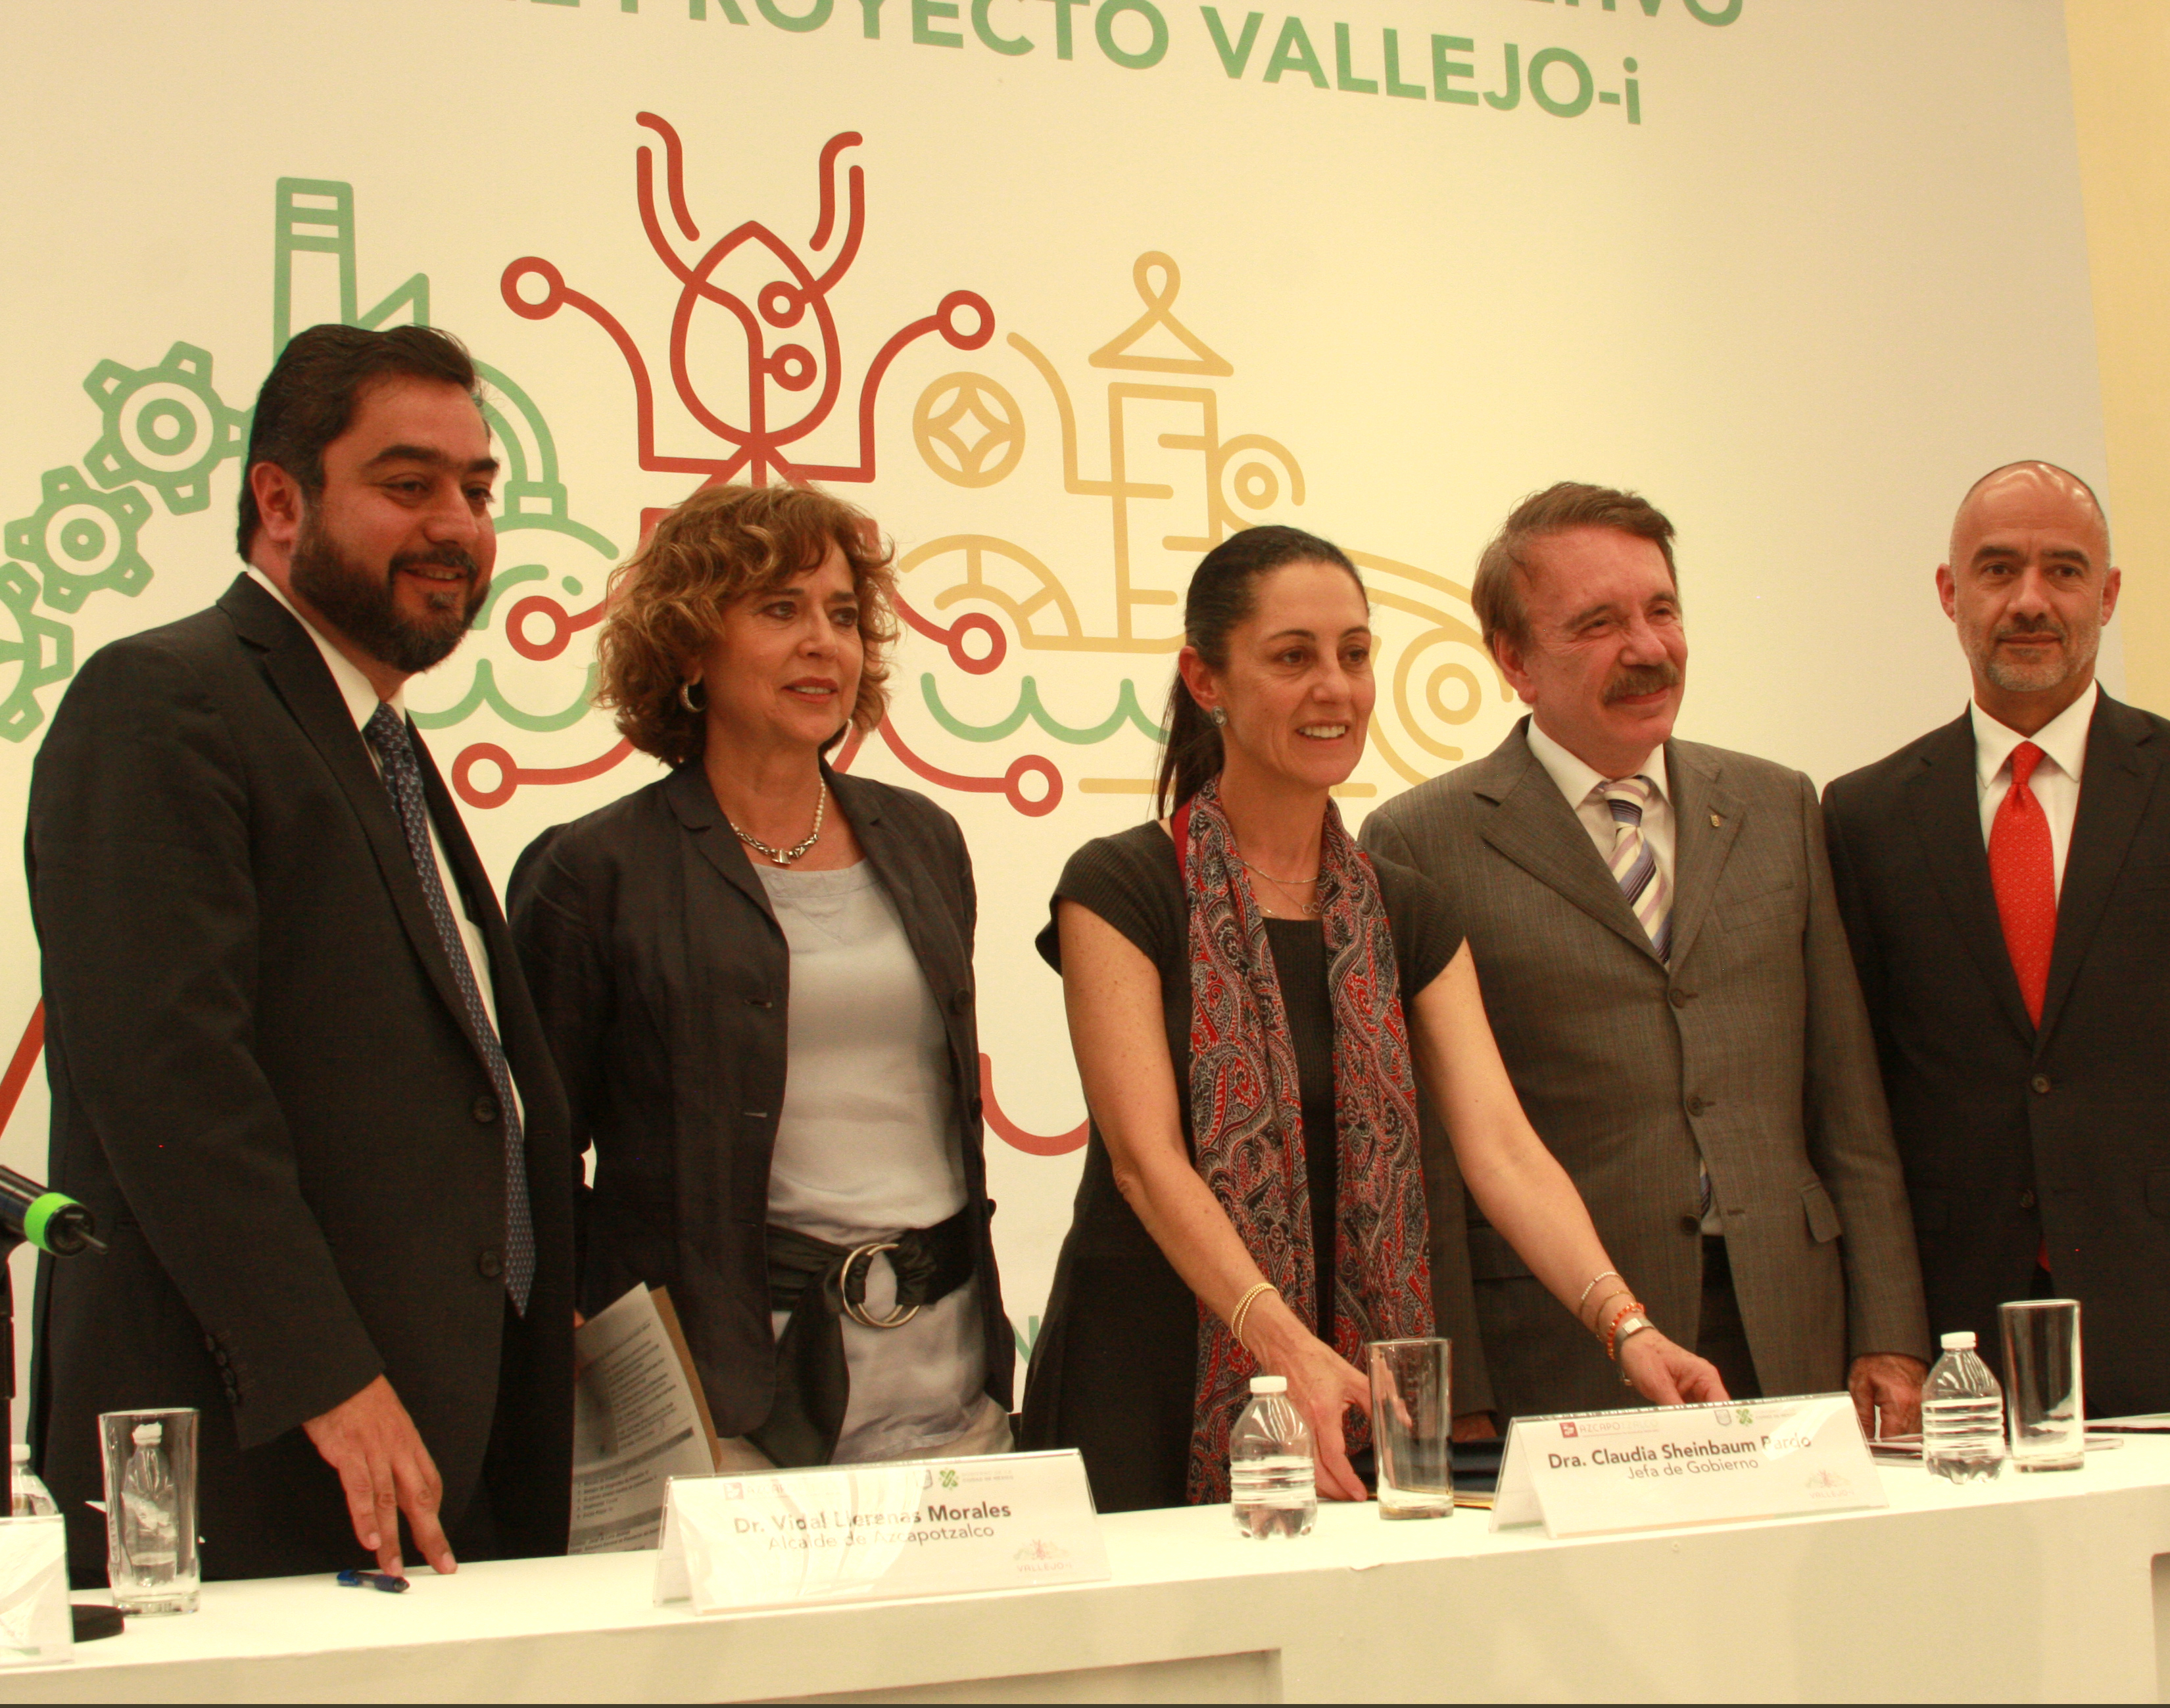 Presentan Consejo Consultivo y avances de Vallejo-i